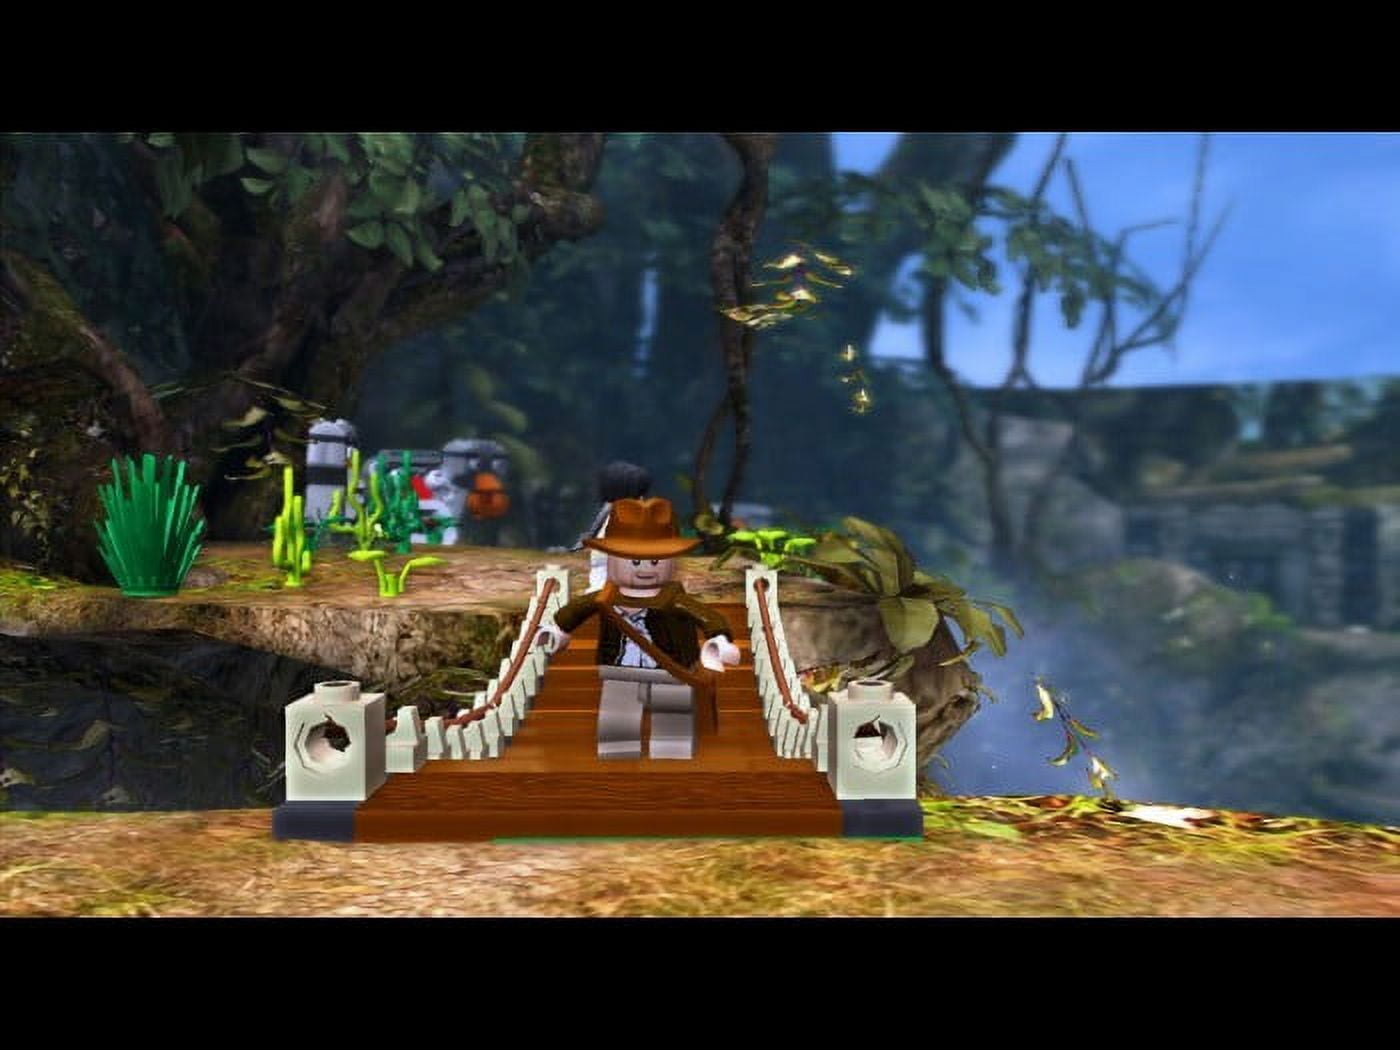 Lego Indiana Jones: The Original Adventures - Nintendo Wii